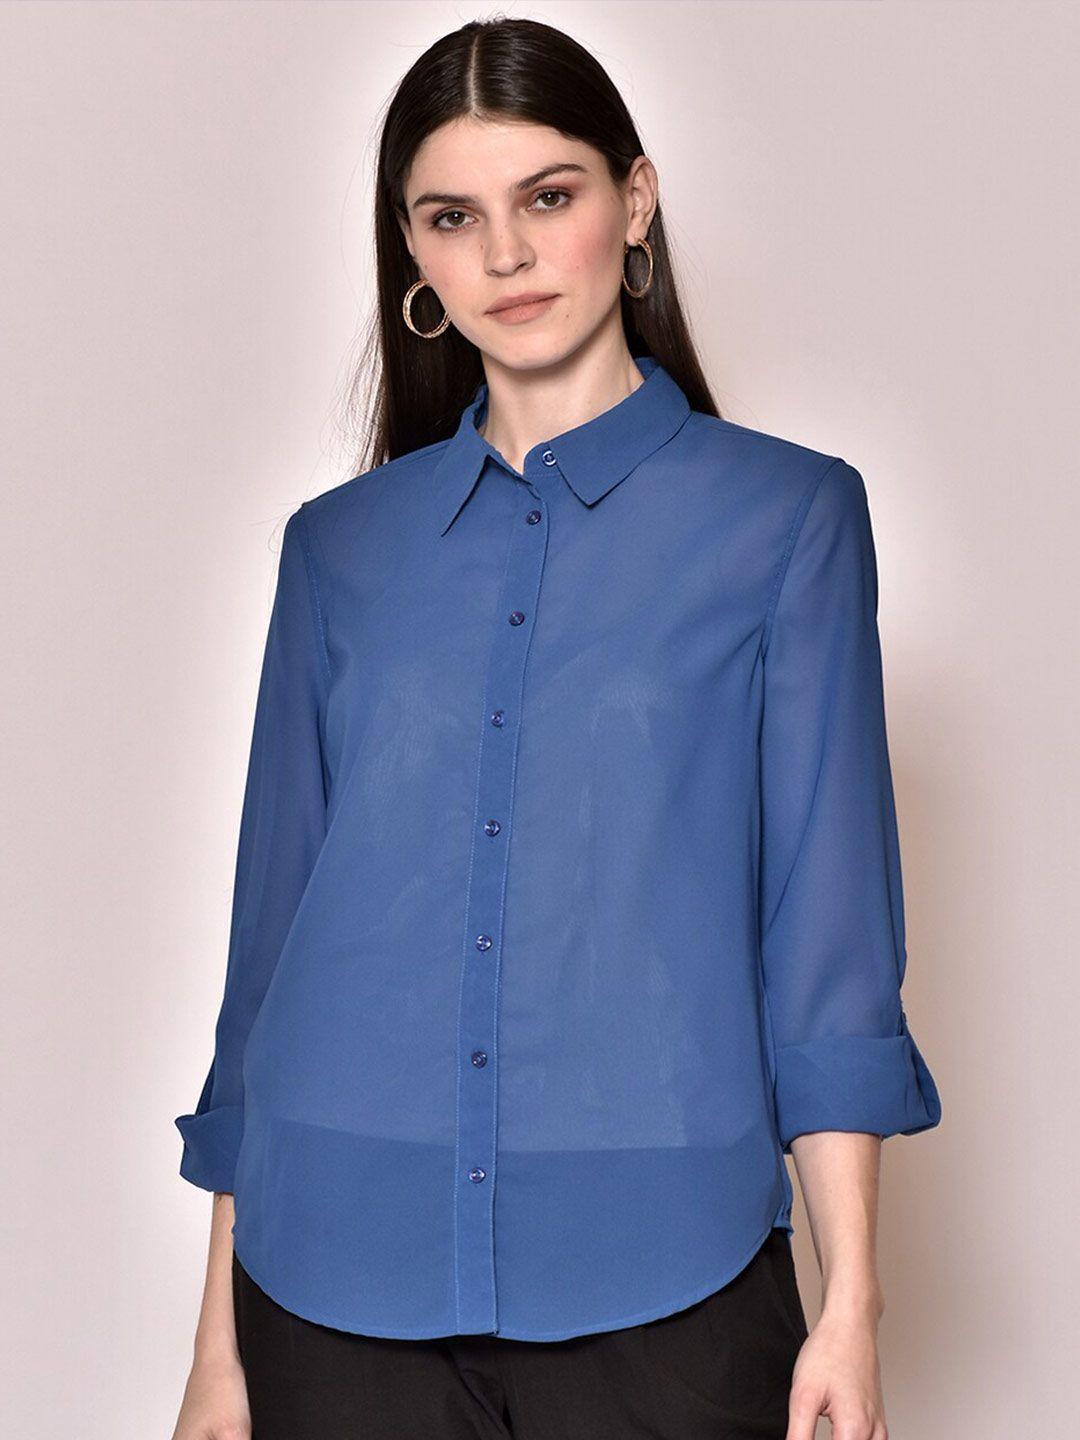 250 designs women blue sheer casual shirt